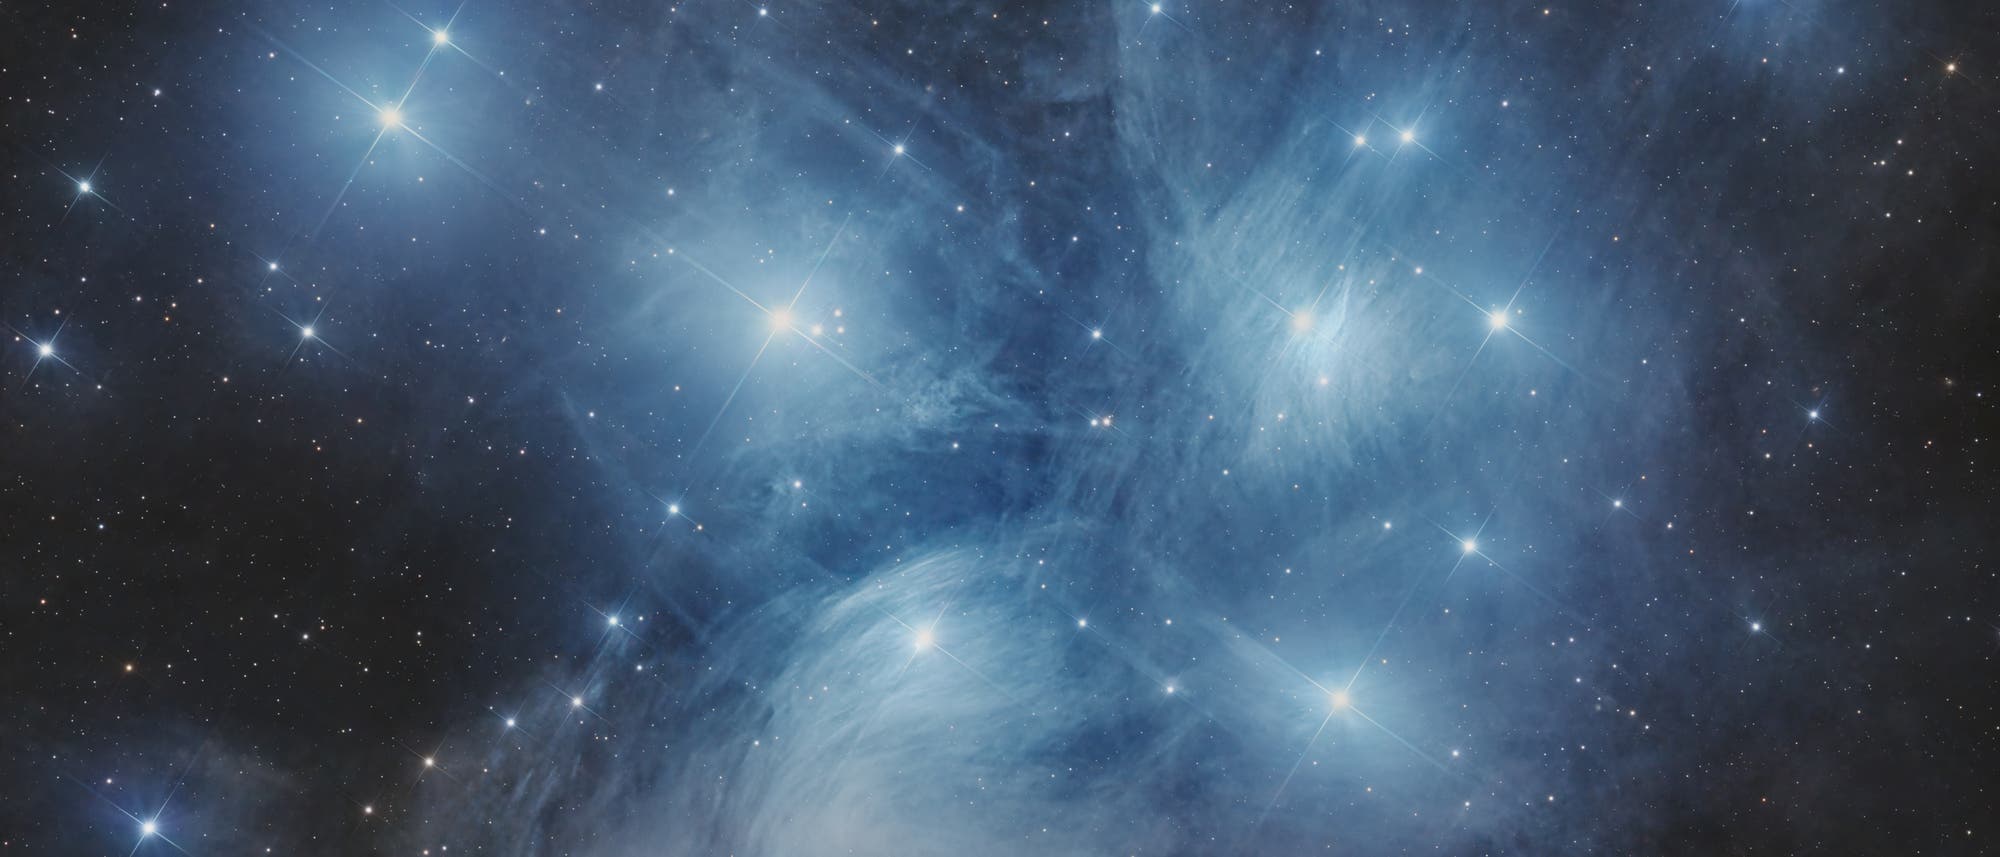 Die Plejaden  - Messier 45